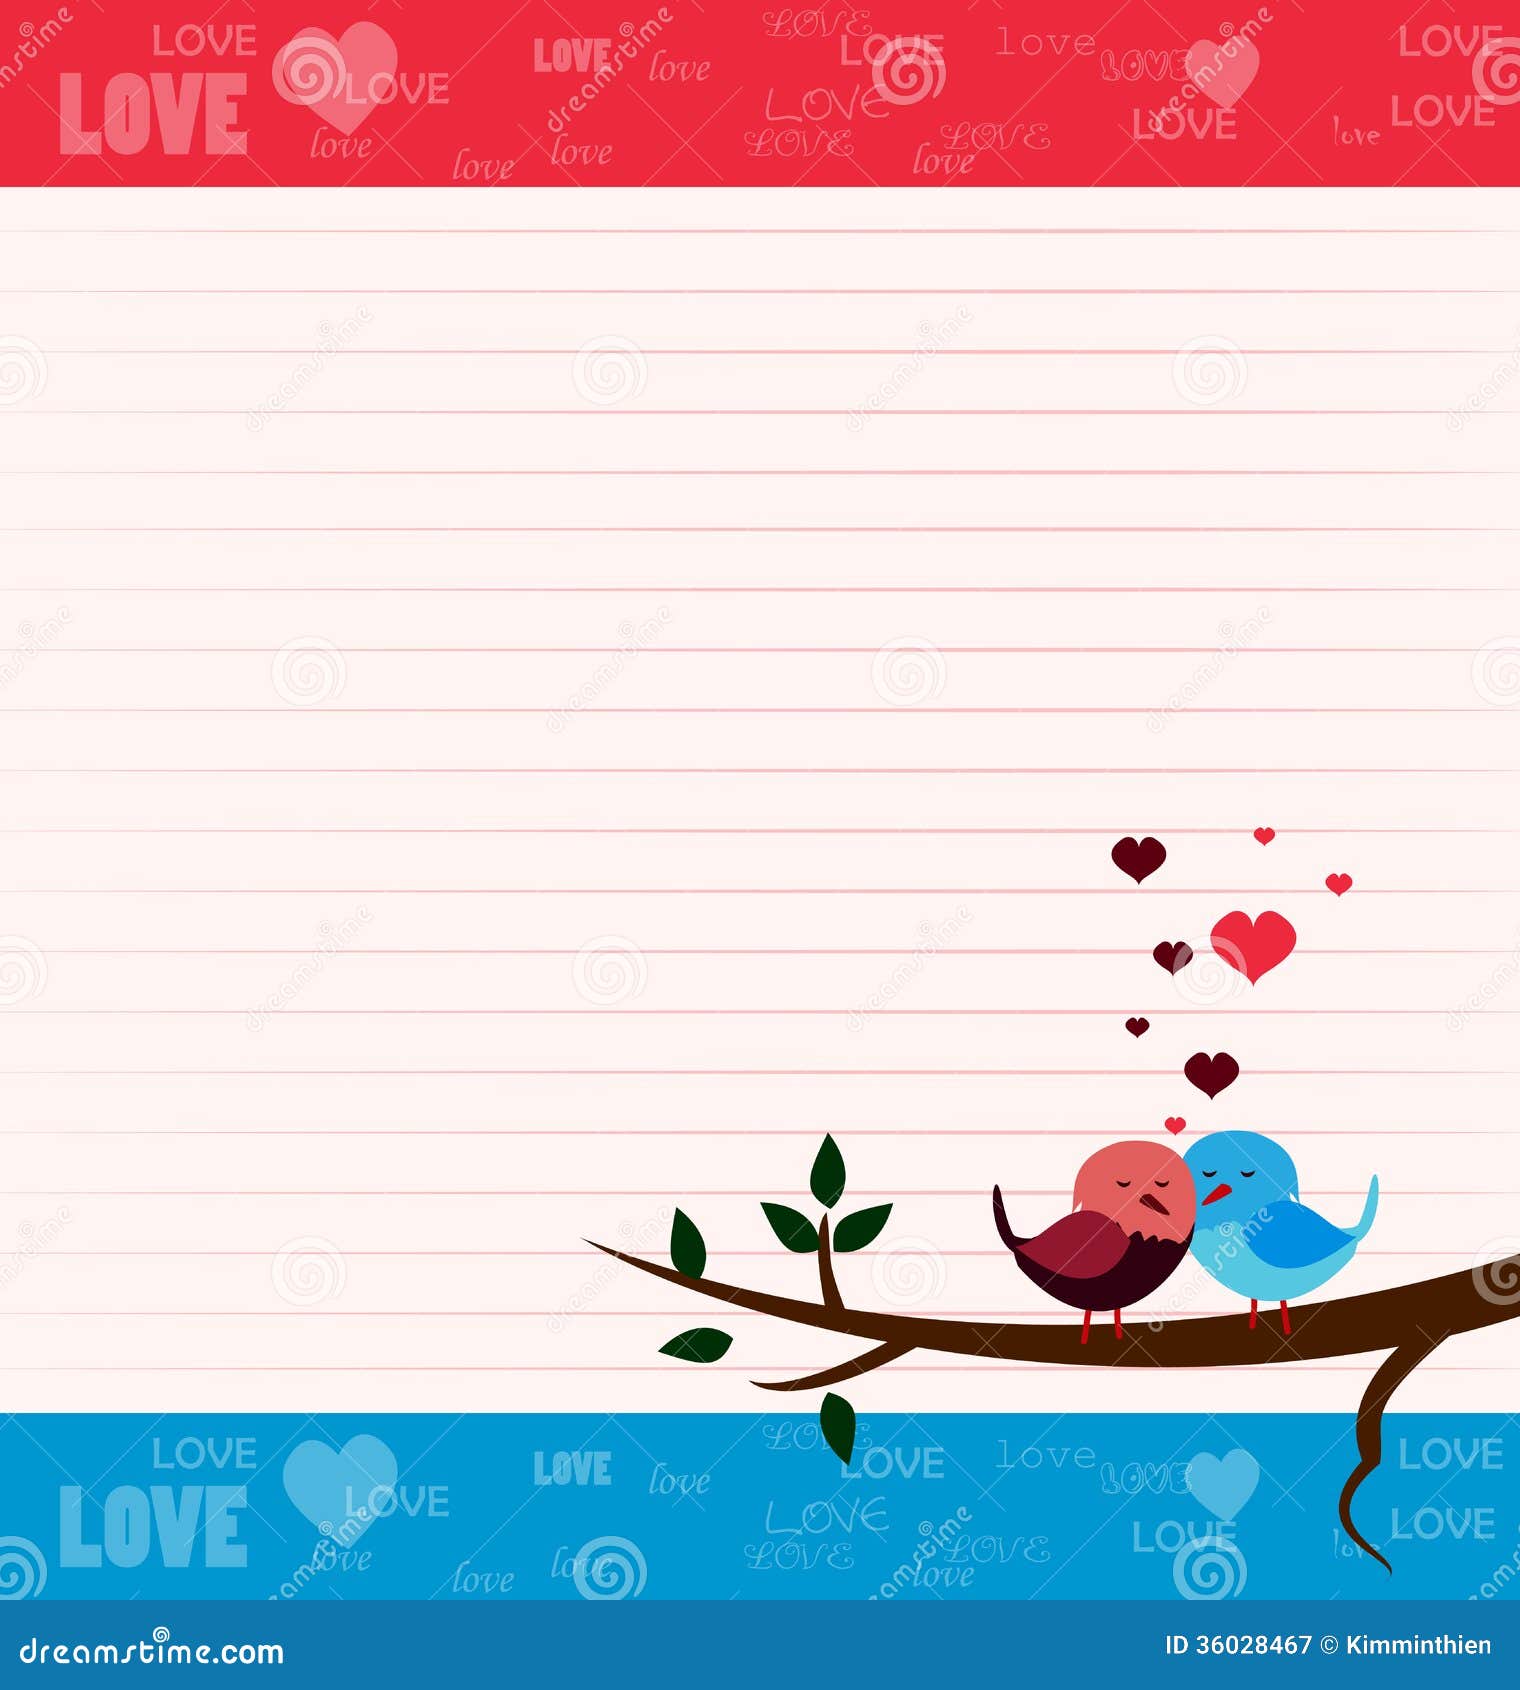 Tarjeta del día de tarjeta del día de San Valentín. Corazón estilizado del día de tarjeta del día de San Valentín adornado con las flores, las vides, y las hojas. Fichero acodado para corregir fácil. EPS 10